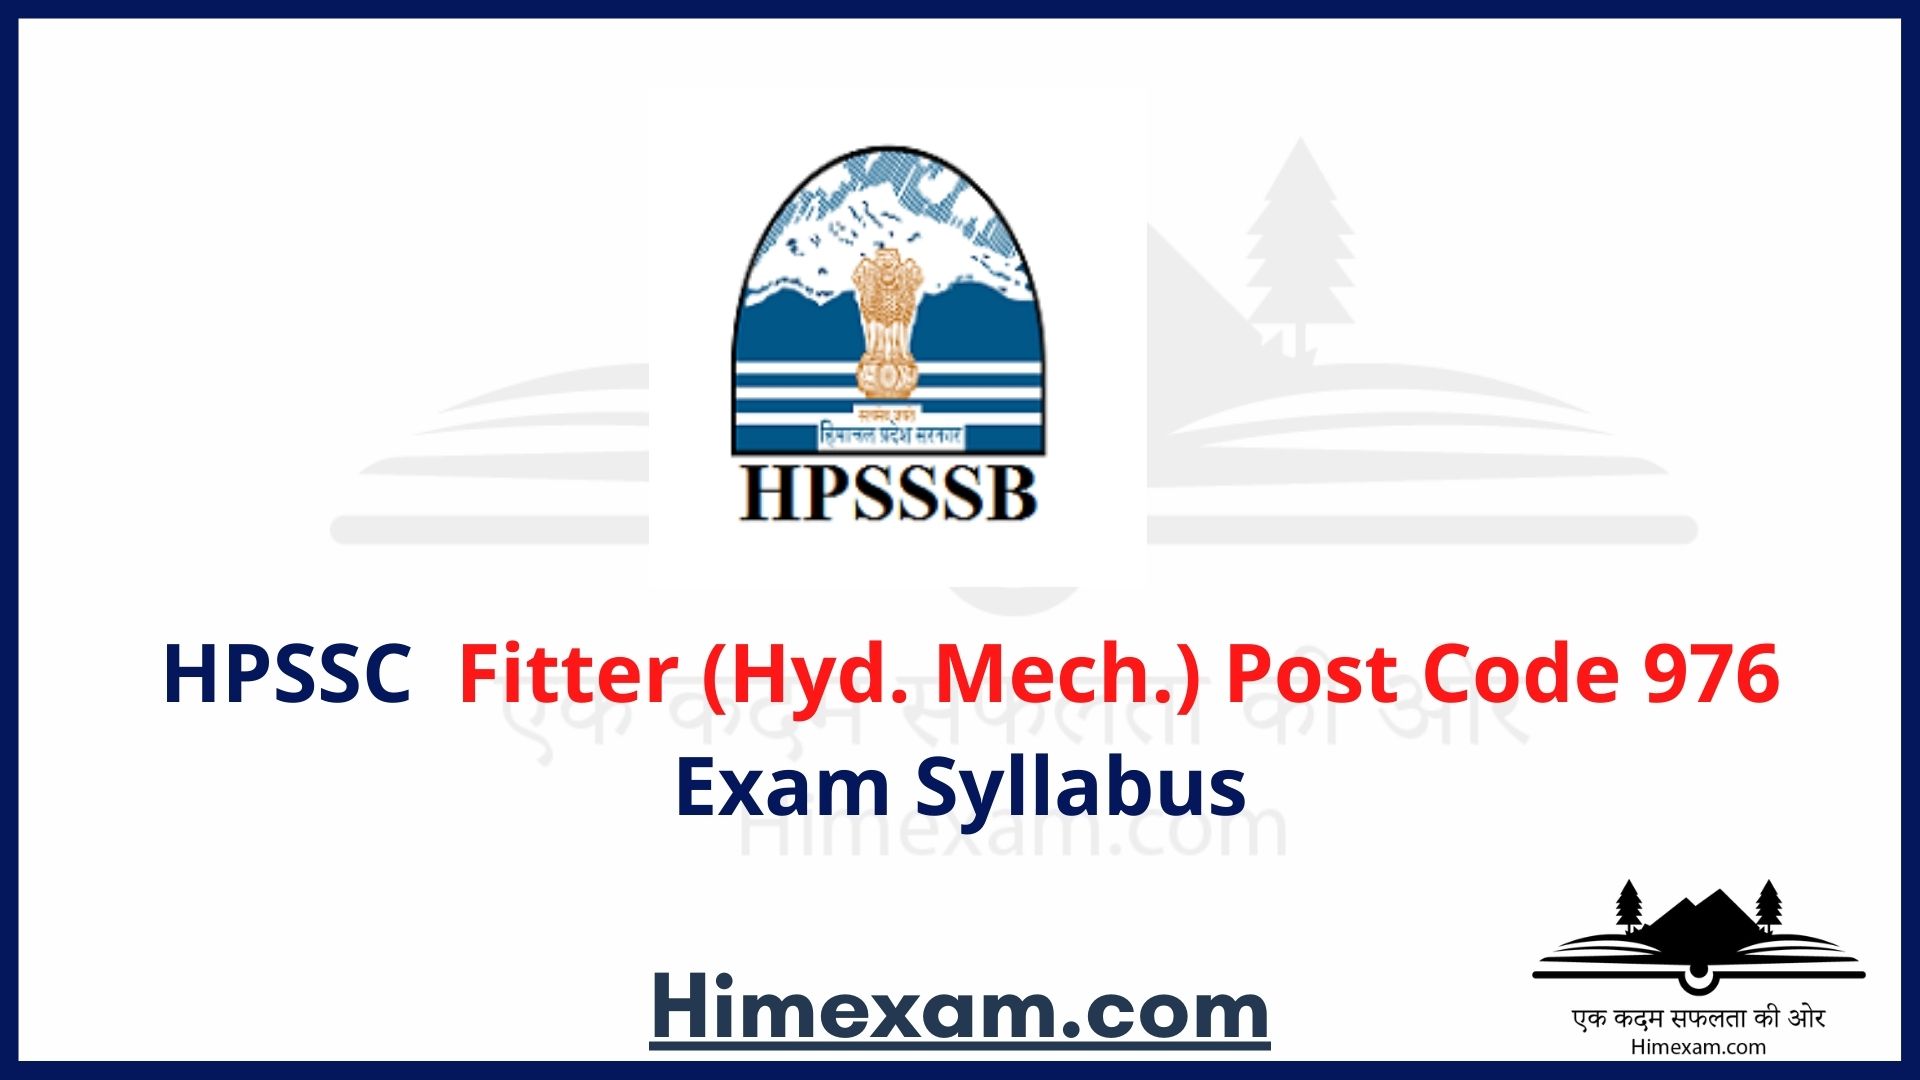 HPSSC Fitter (Hyd. Mech.) Post Code 976 Exam Syllabus